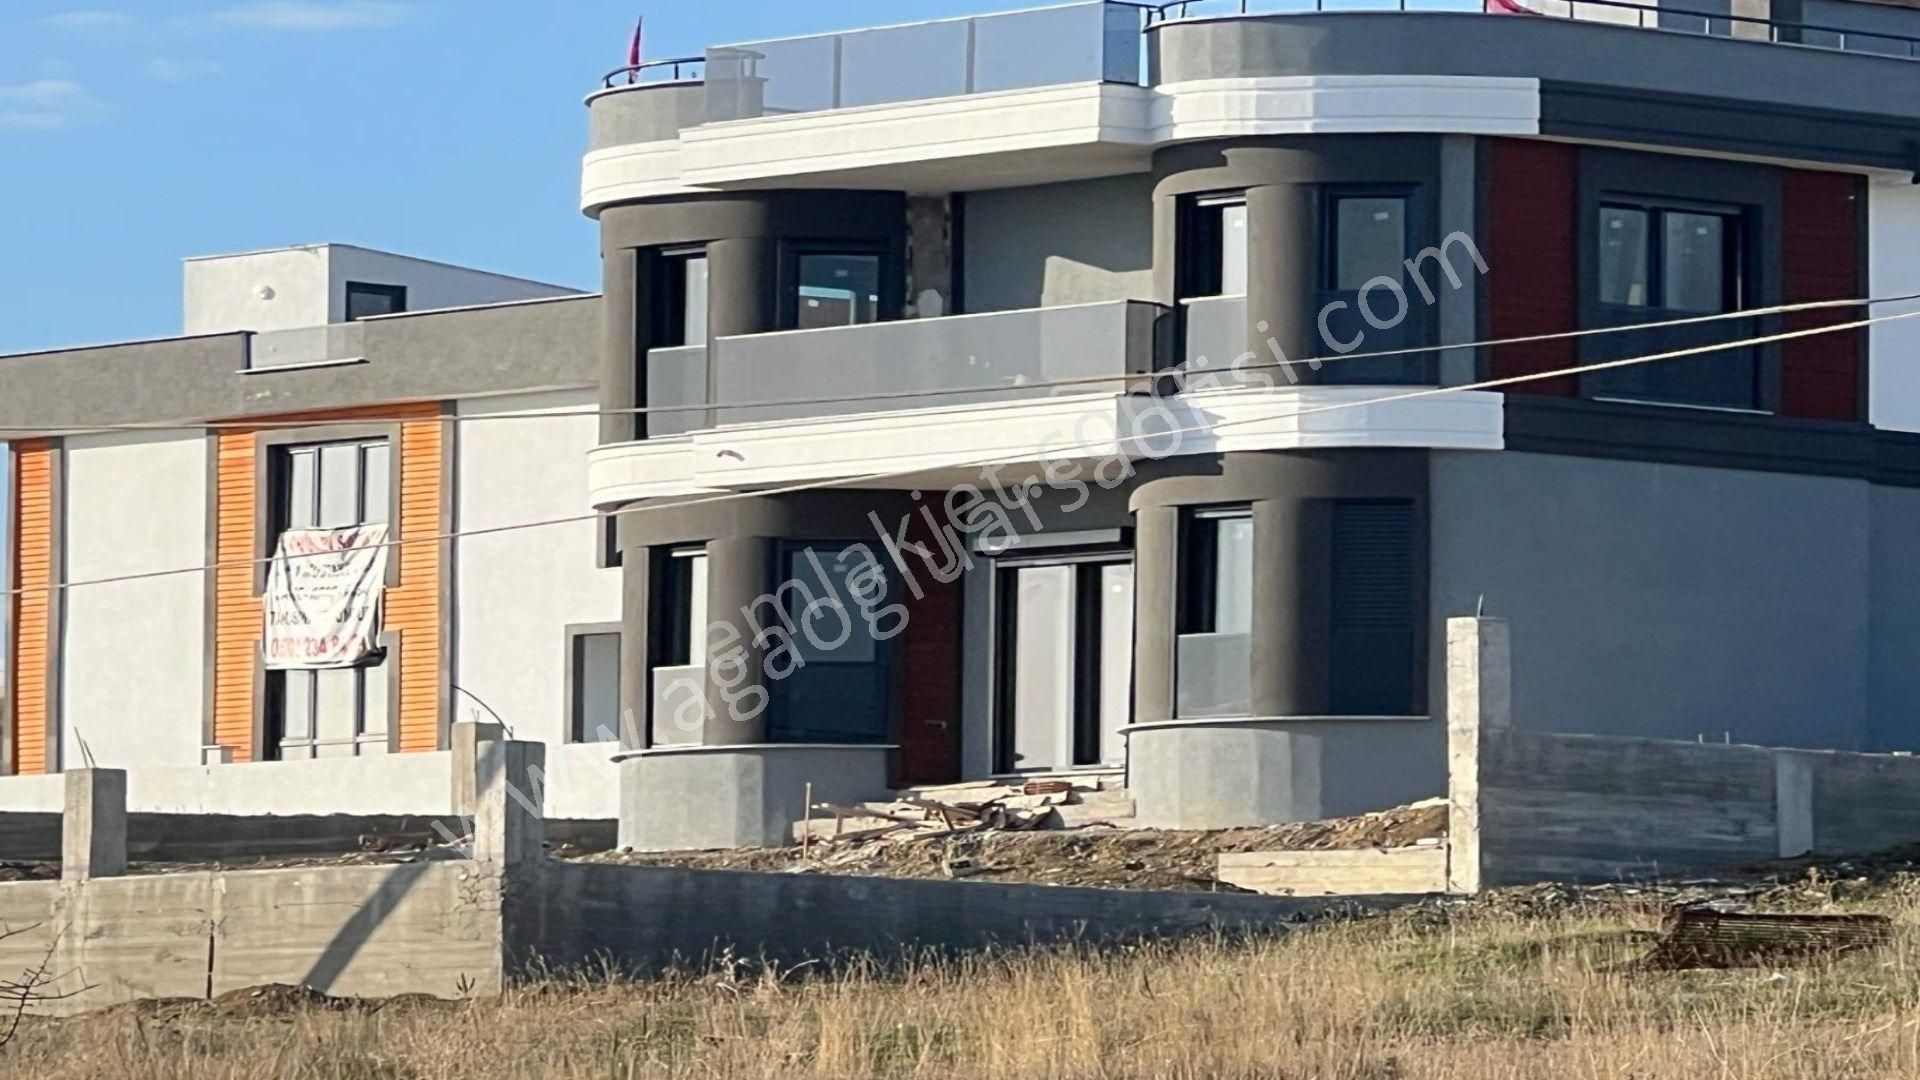 Şarköy İstiklal Satılık Villa İmarlı  Tekirdağ Şarköy'de Satılık Deniz Manzaralı İmarlı Arsa 290 m2